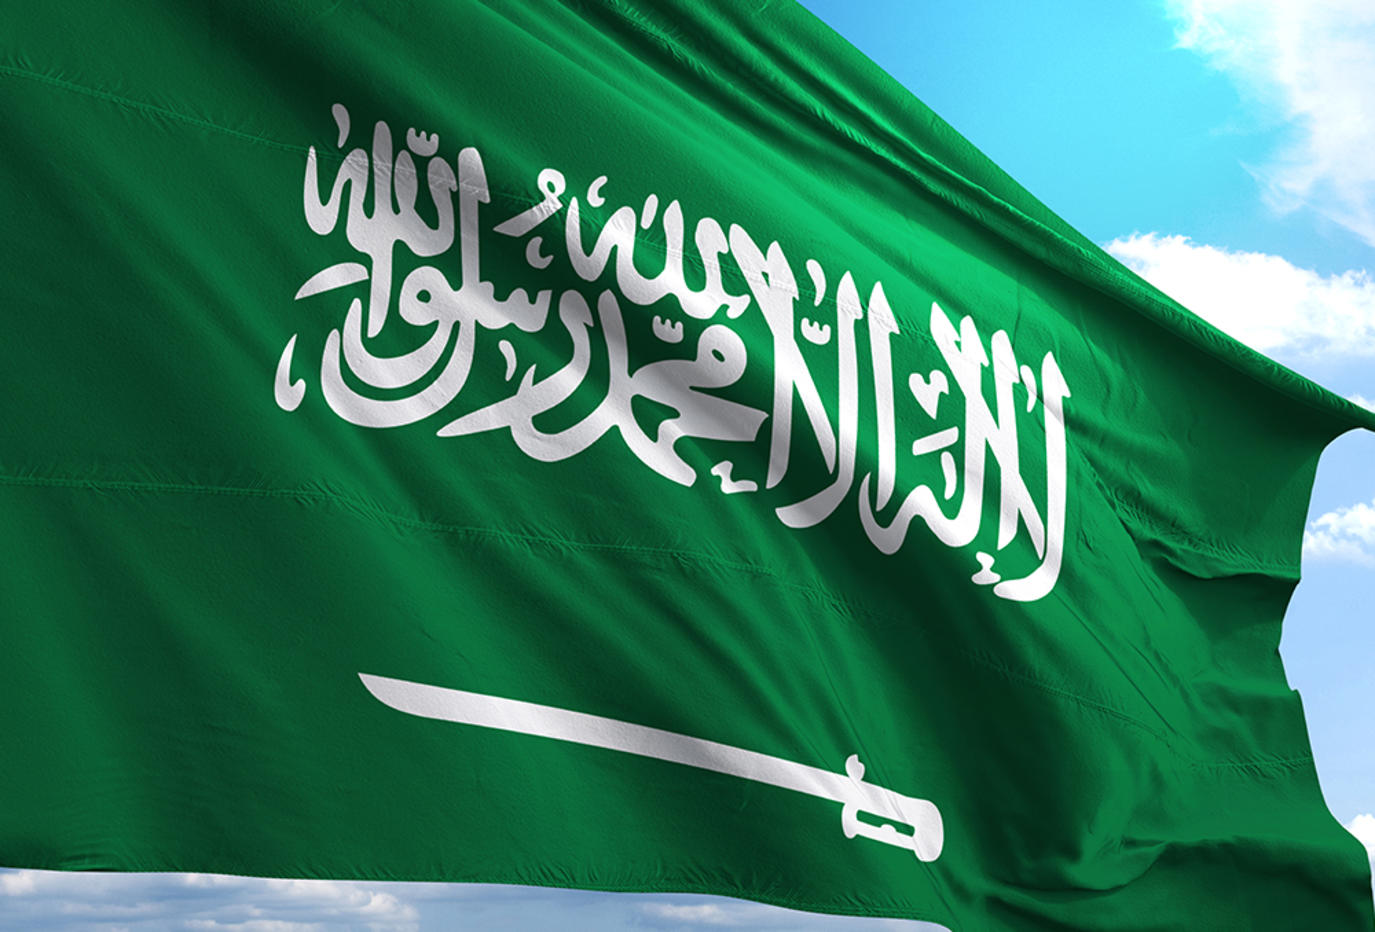 السعودية تسعد كل المسلمين في أمريكا ودول الاتحاد الأوروبي بقرار رسمي .. والعالم ينتظر الكشف عن تفاصيله!